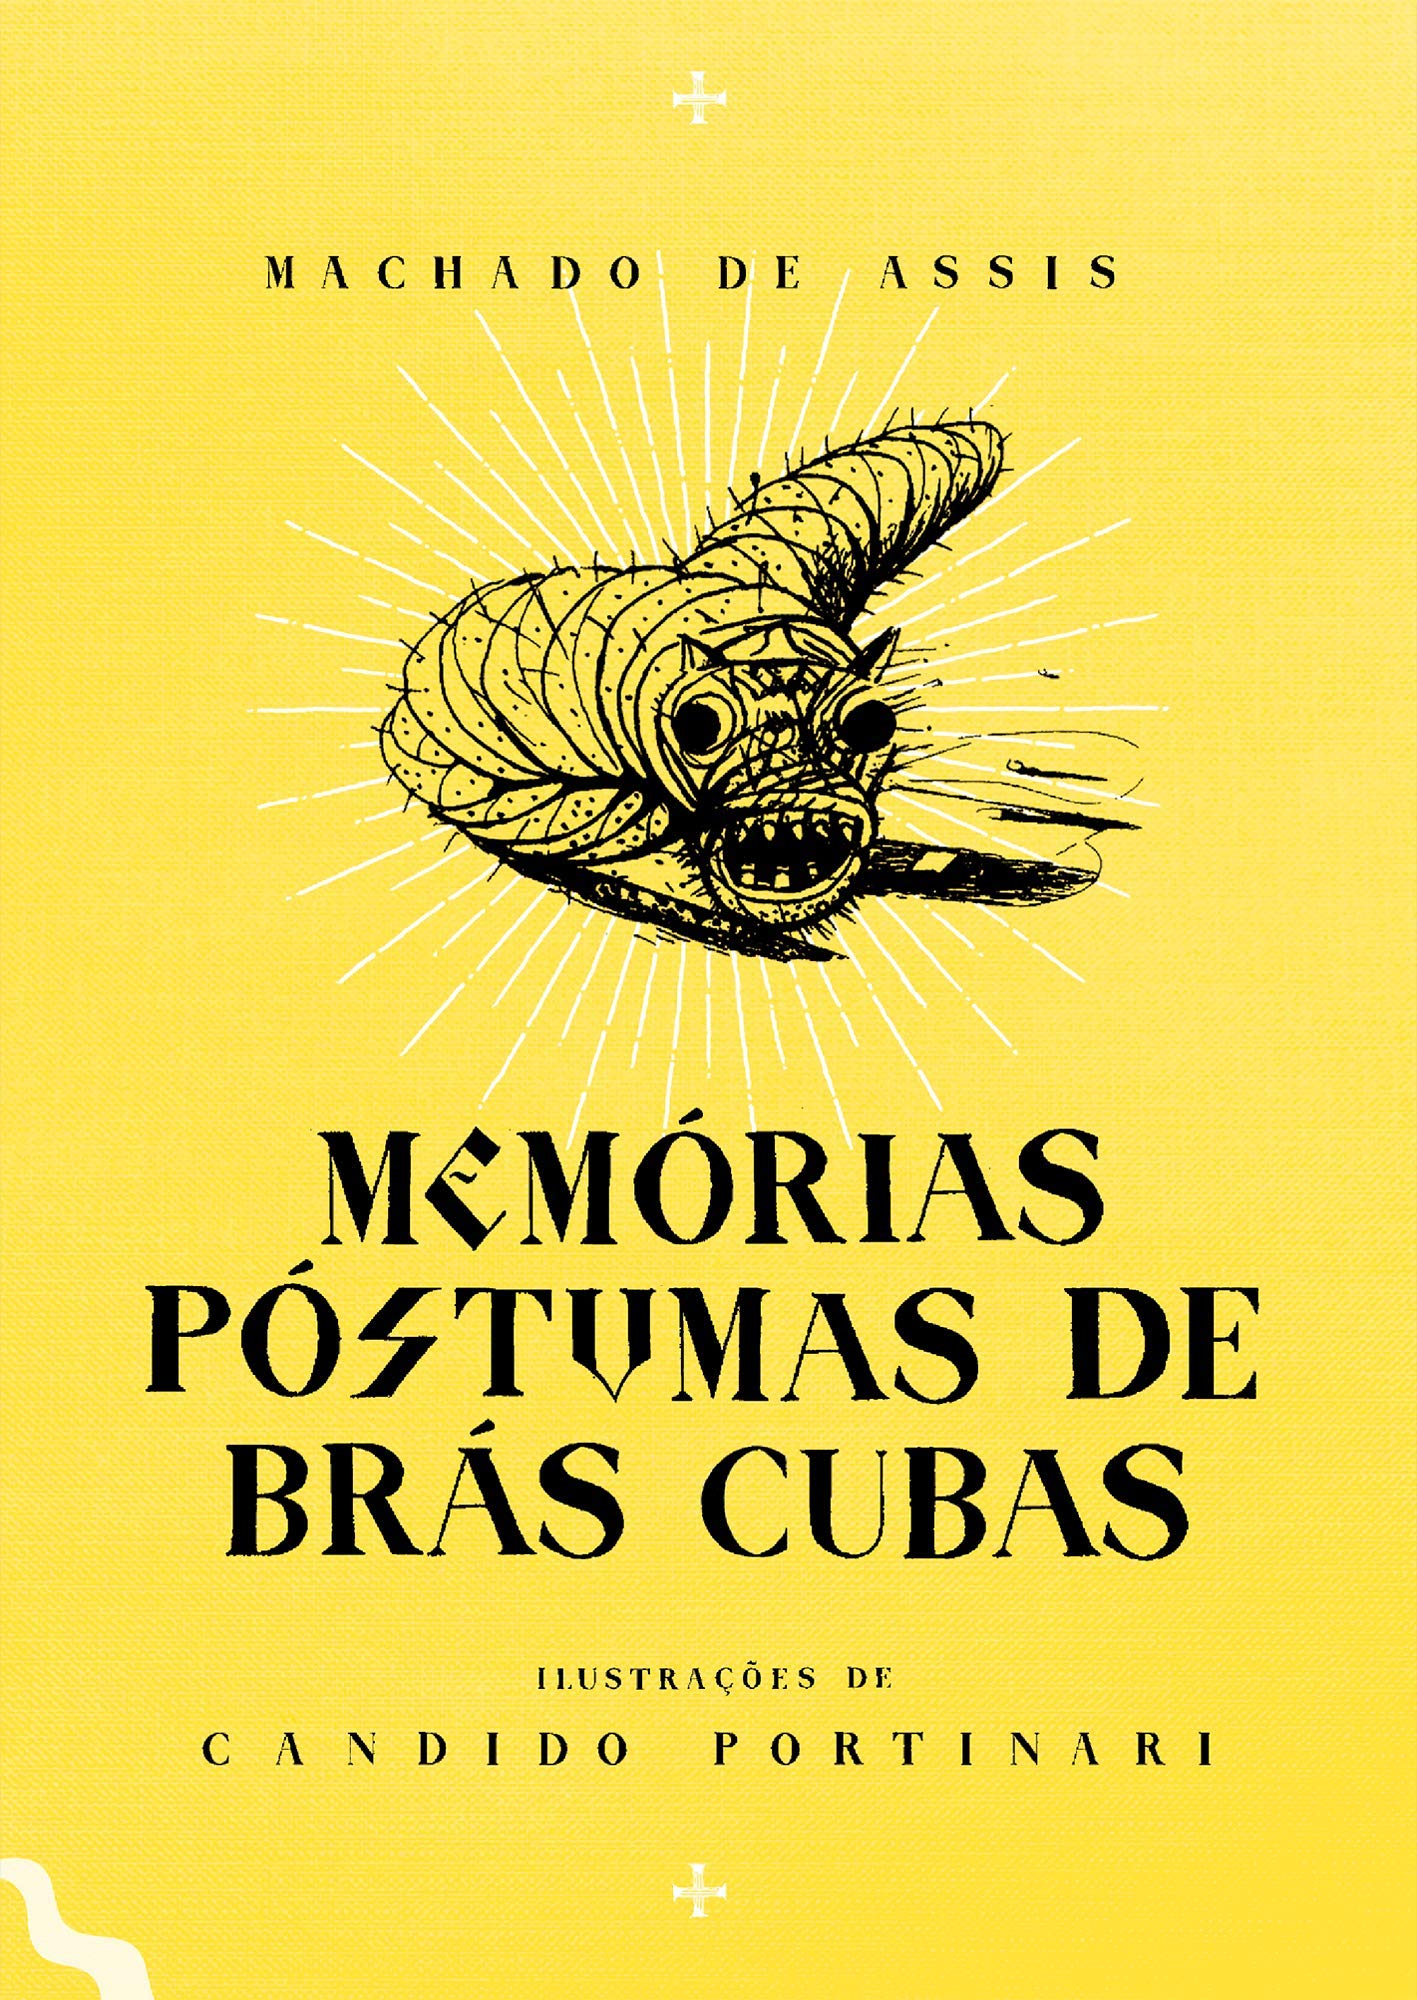 Memórias Póstumas de Brás Cubas ebook by Machado De Assis - Rakuten Kobo